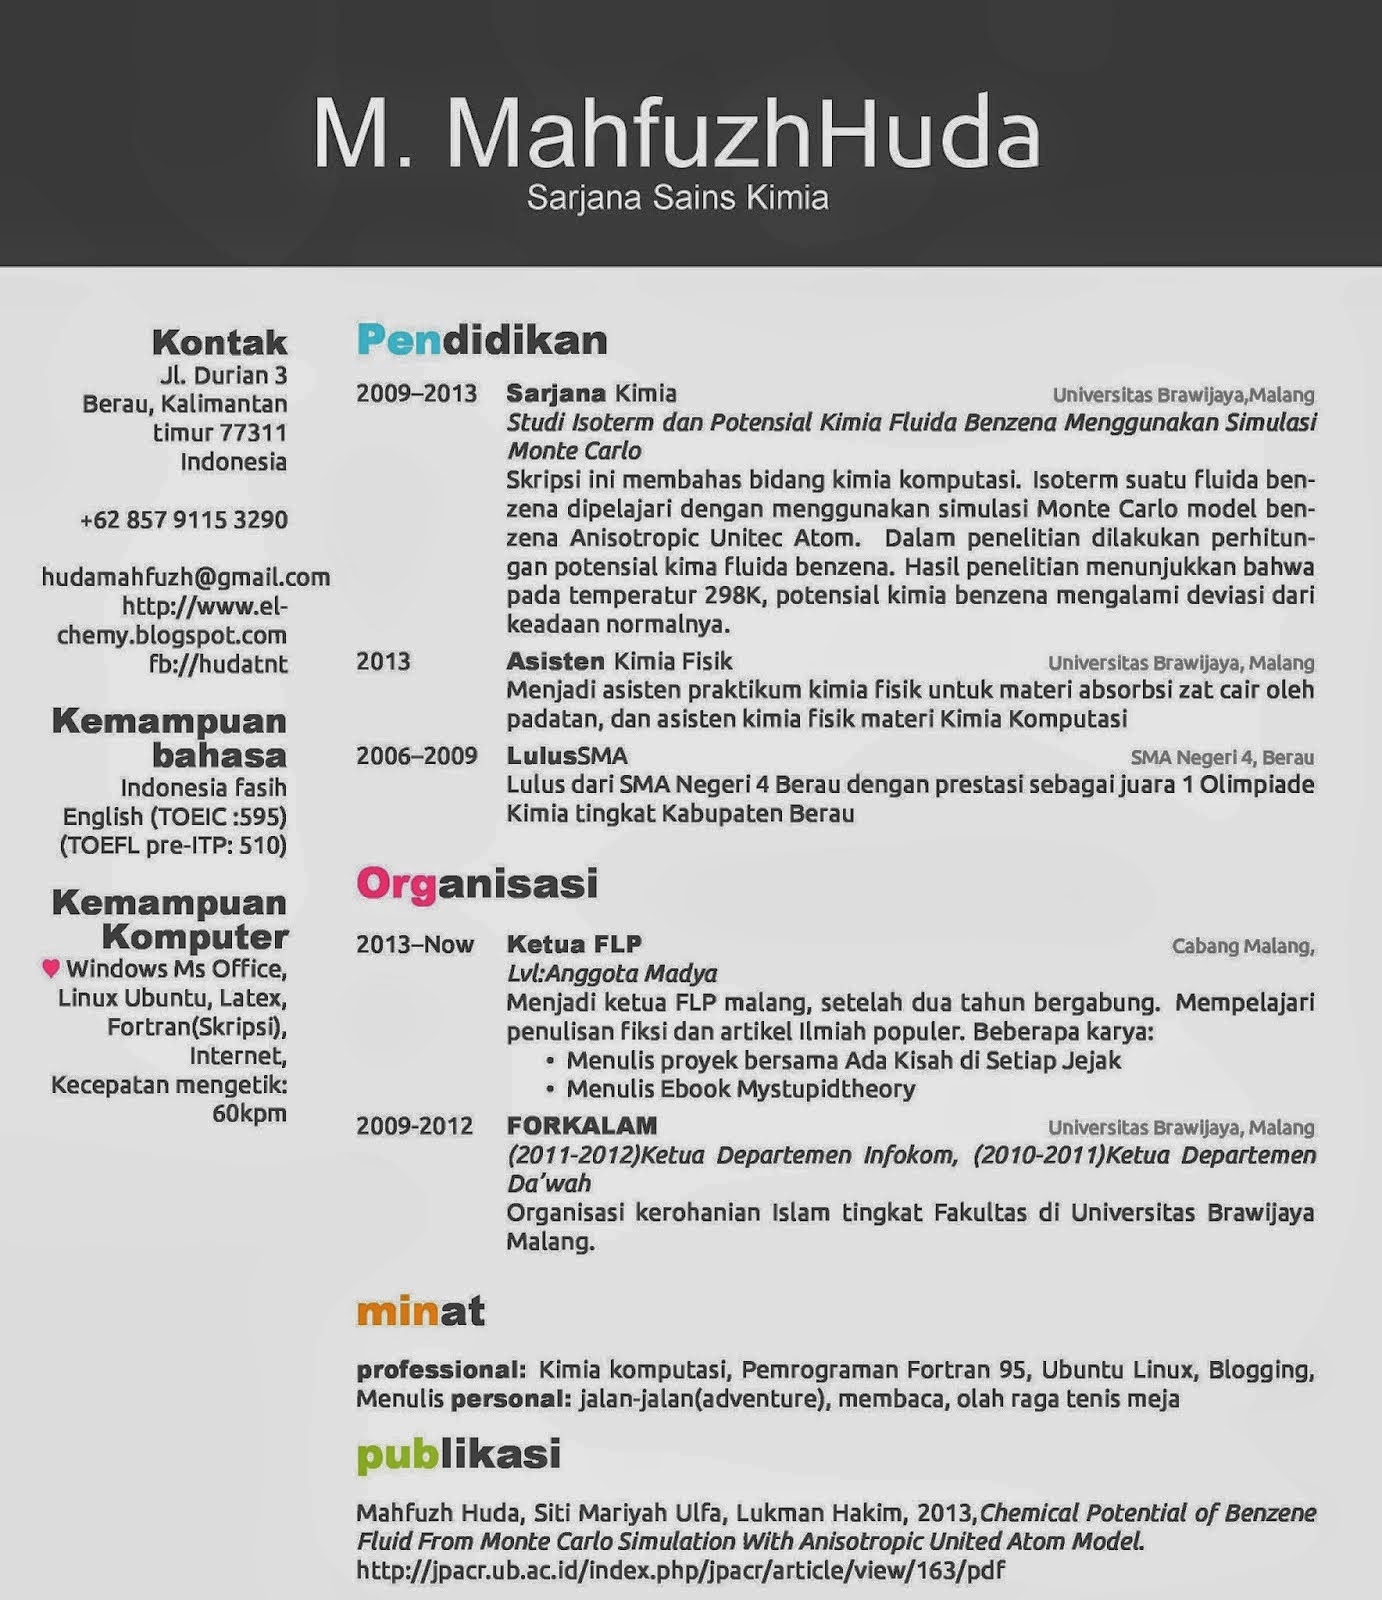 Contoh cover letter untuk resume dalam bahasa melayu